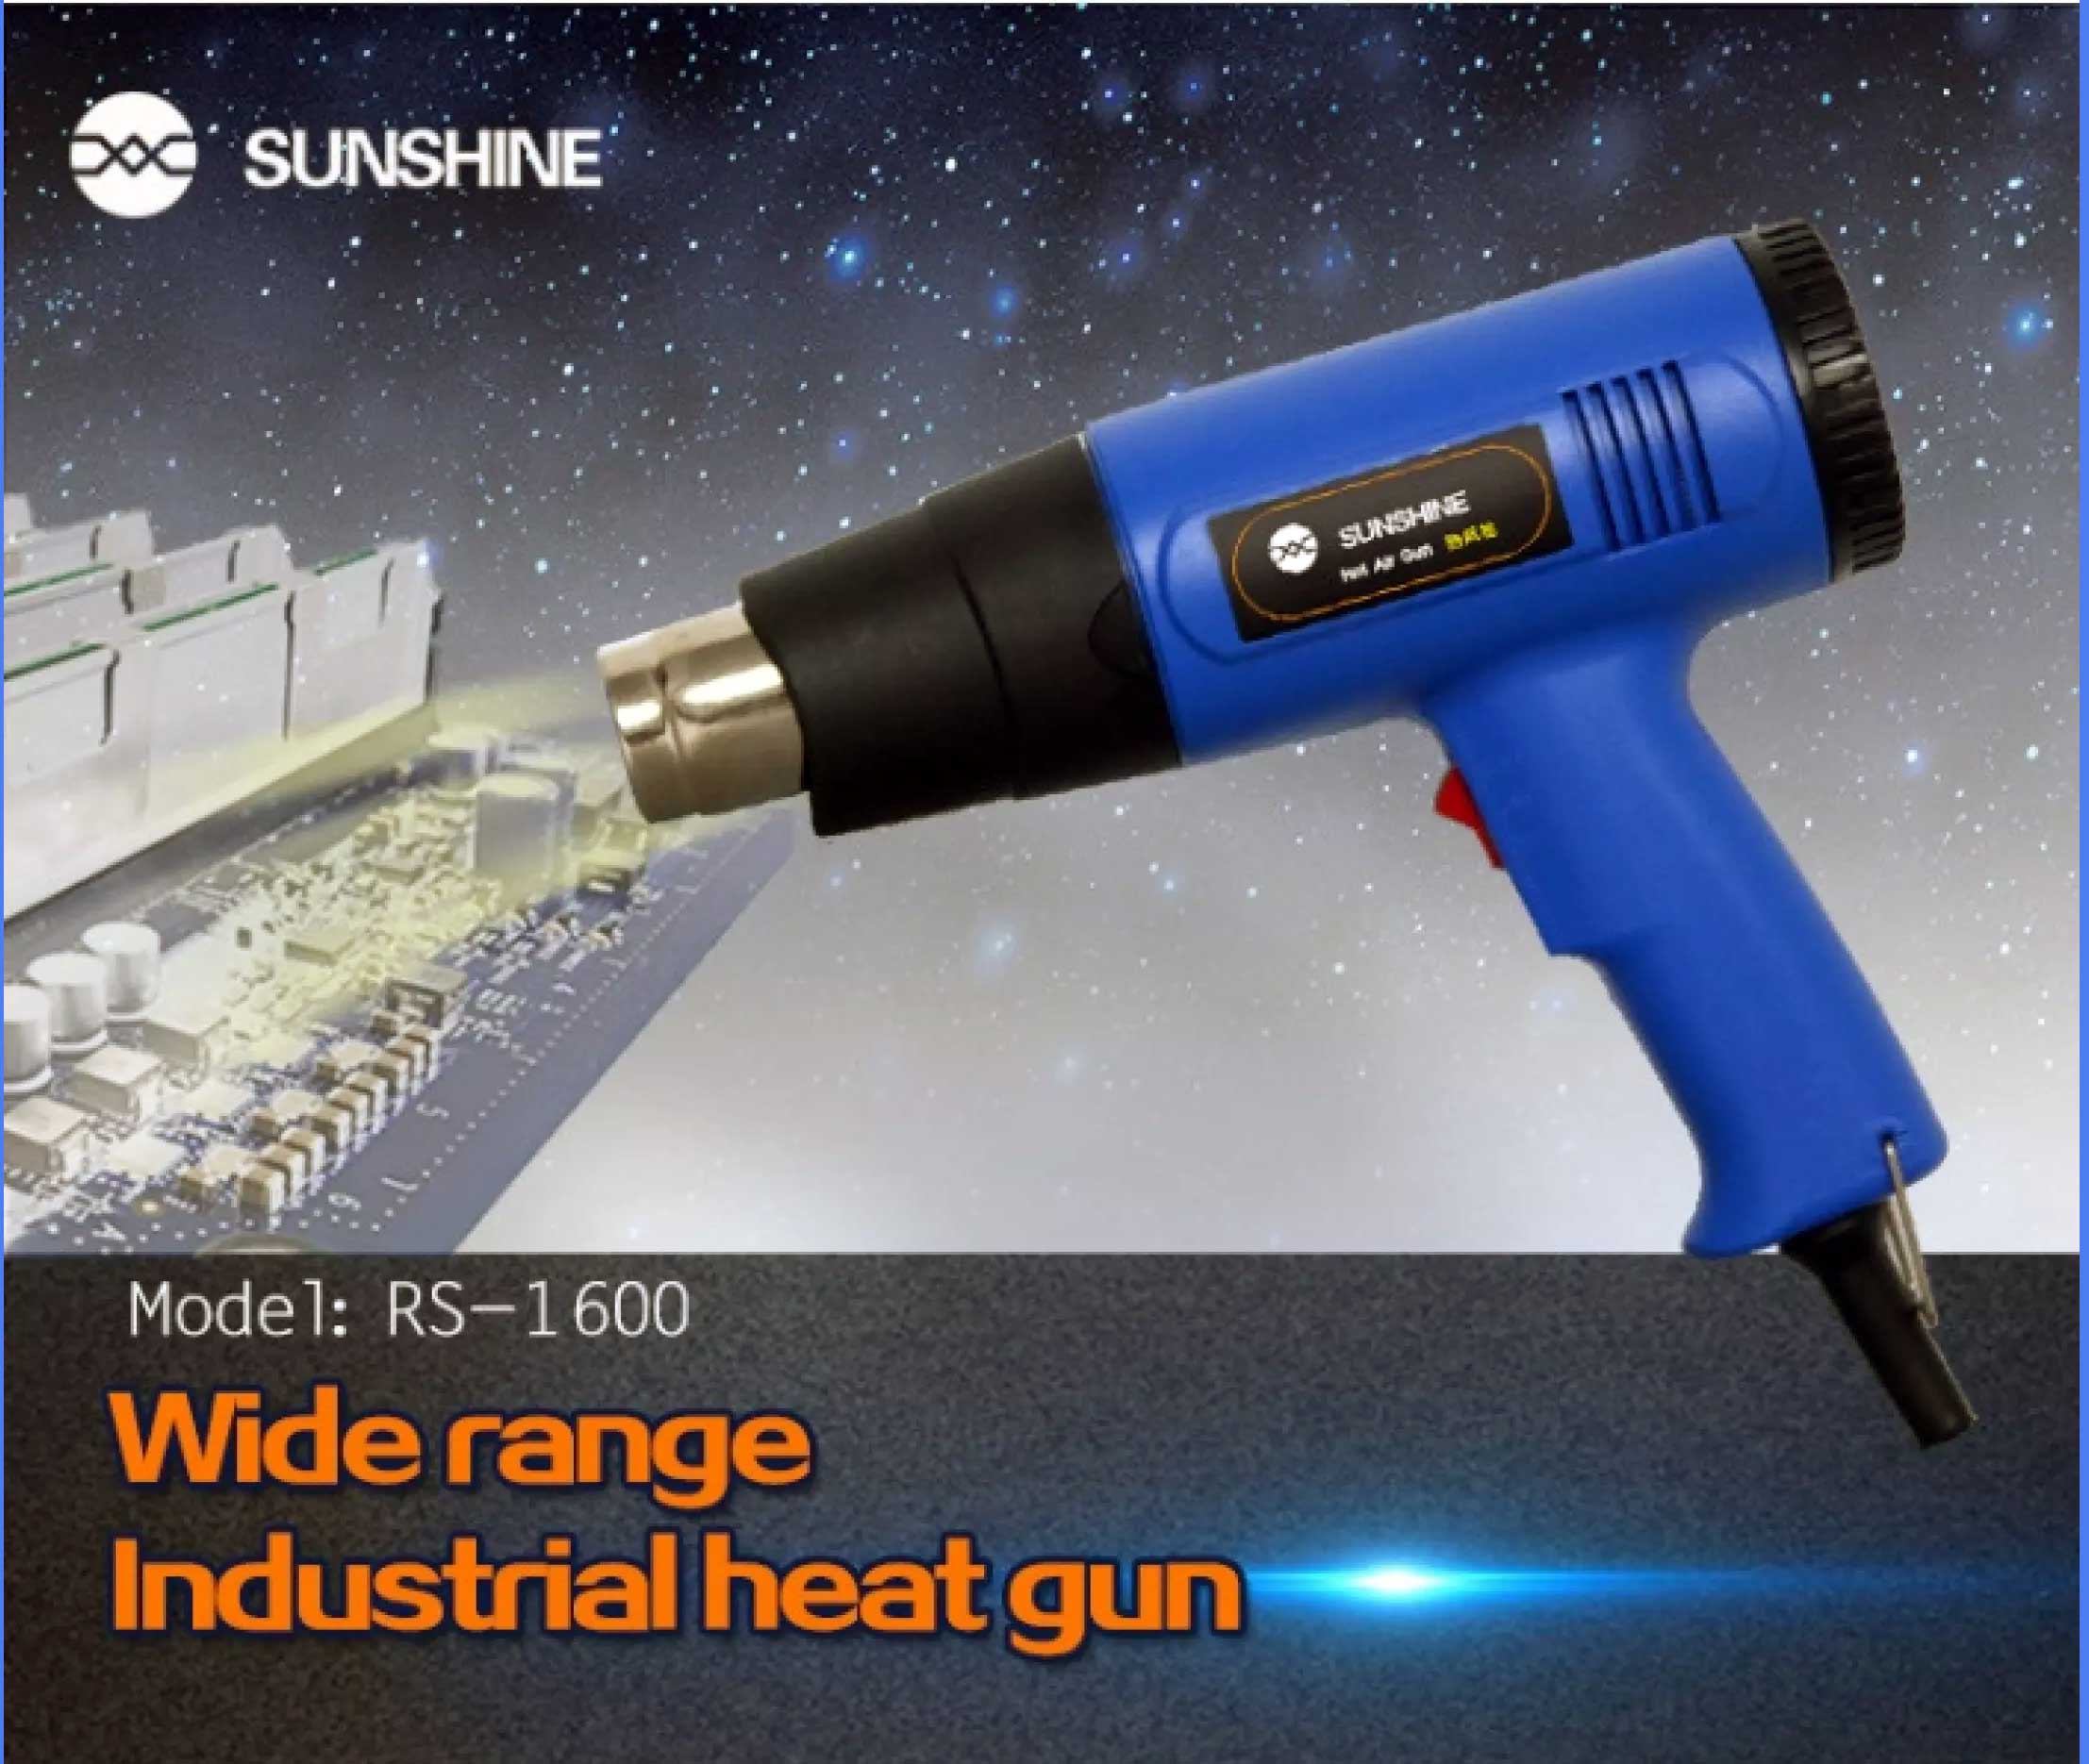 SUNSHINE RS-1600 HOT AIR GUN